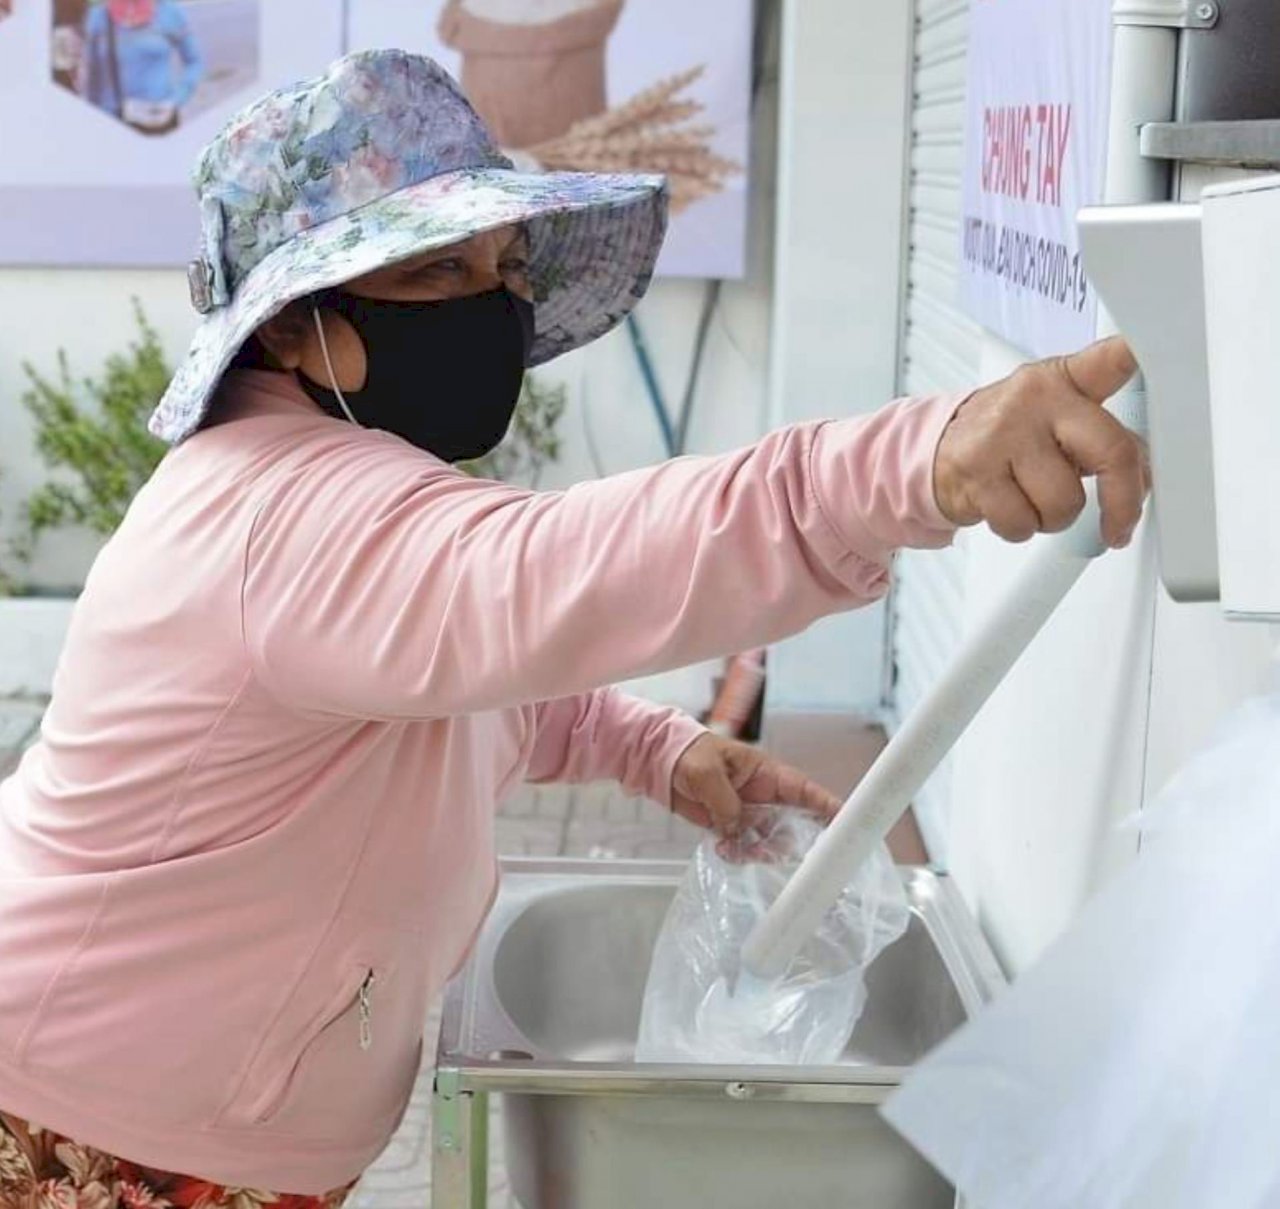 武漢肺炎封城 越南企業老闆提供窮人免費「白米ATM」